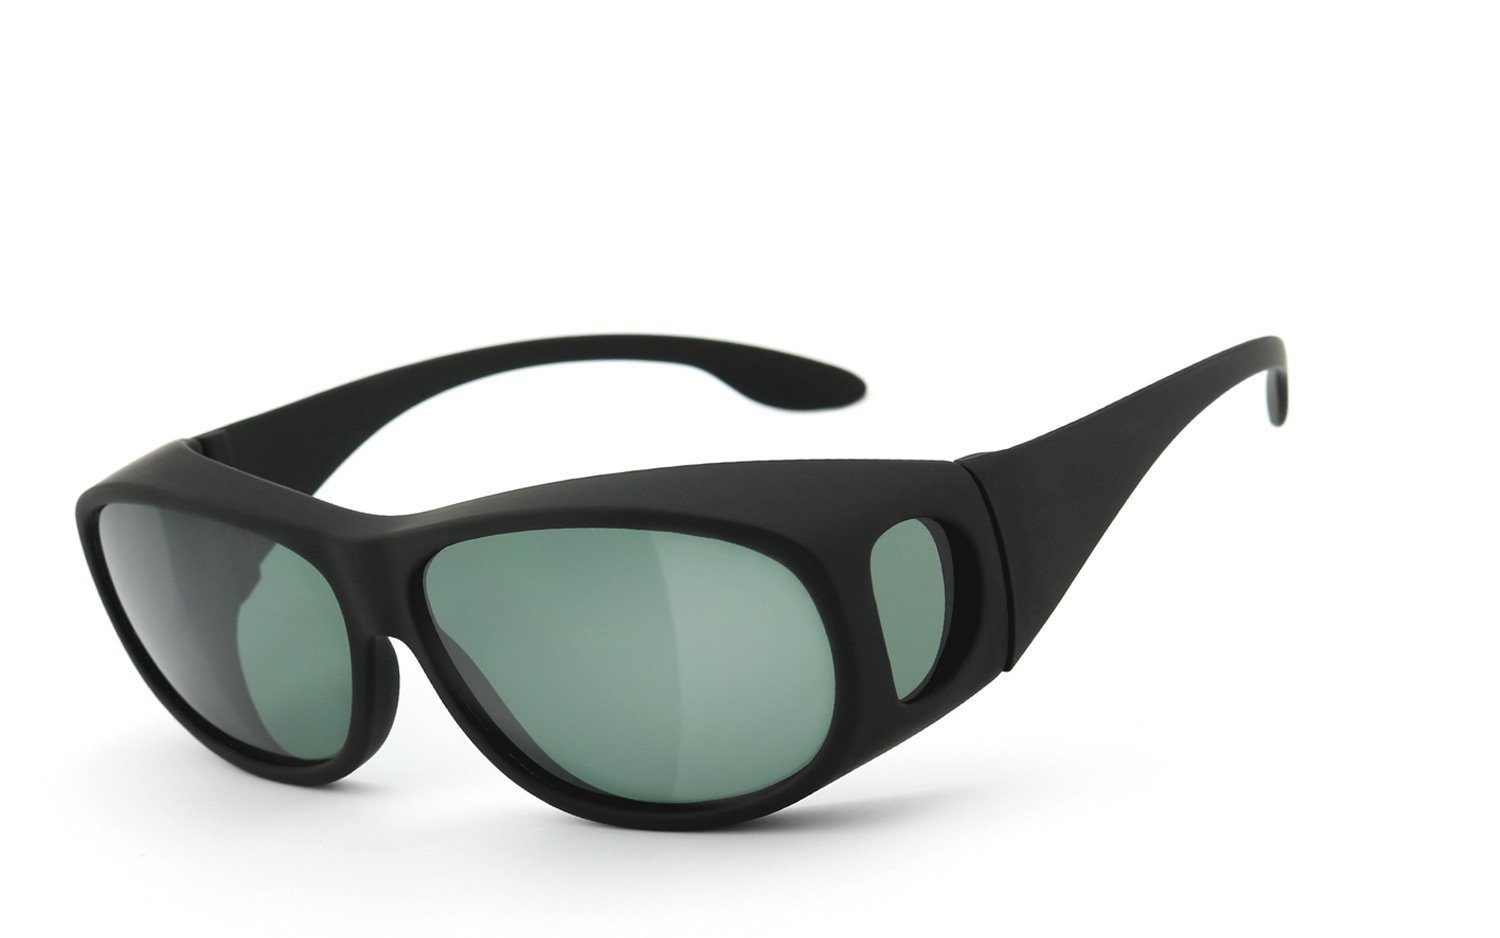 Sonnenbrille Überbrille polarized 11.0 Skipper eyewear Überziehbrille - SKIPPER